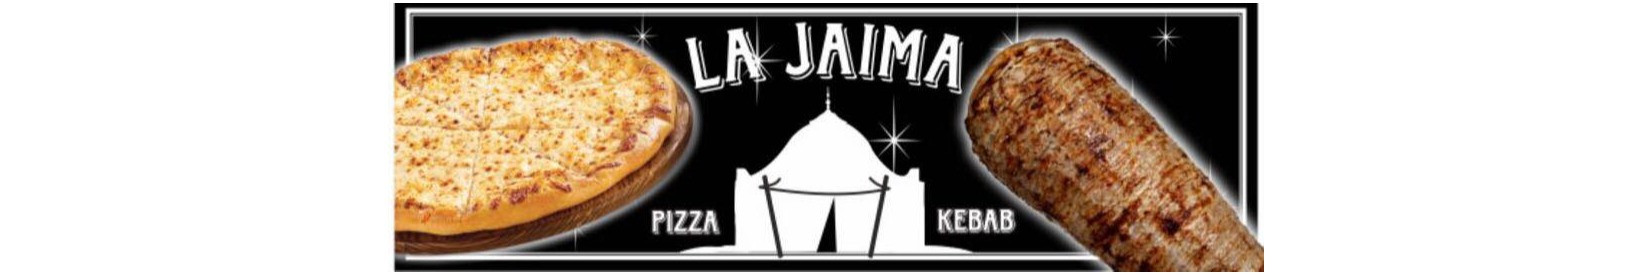 La Jaima Pizza Y Kebab